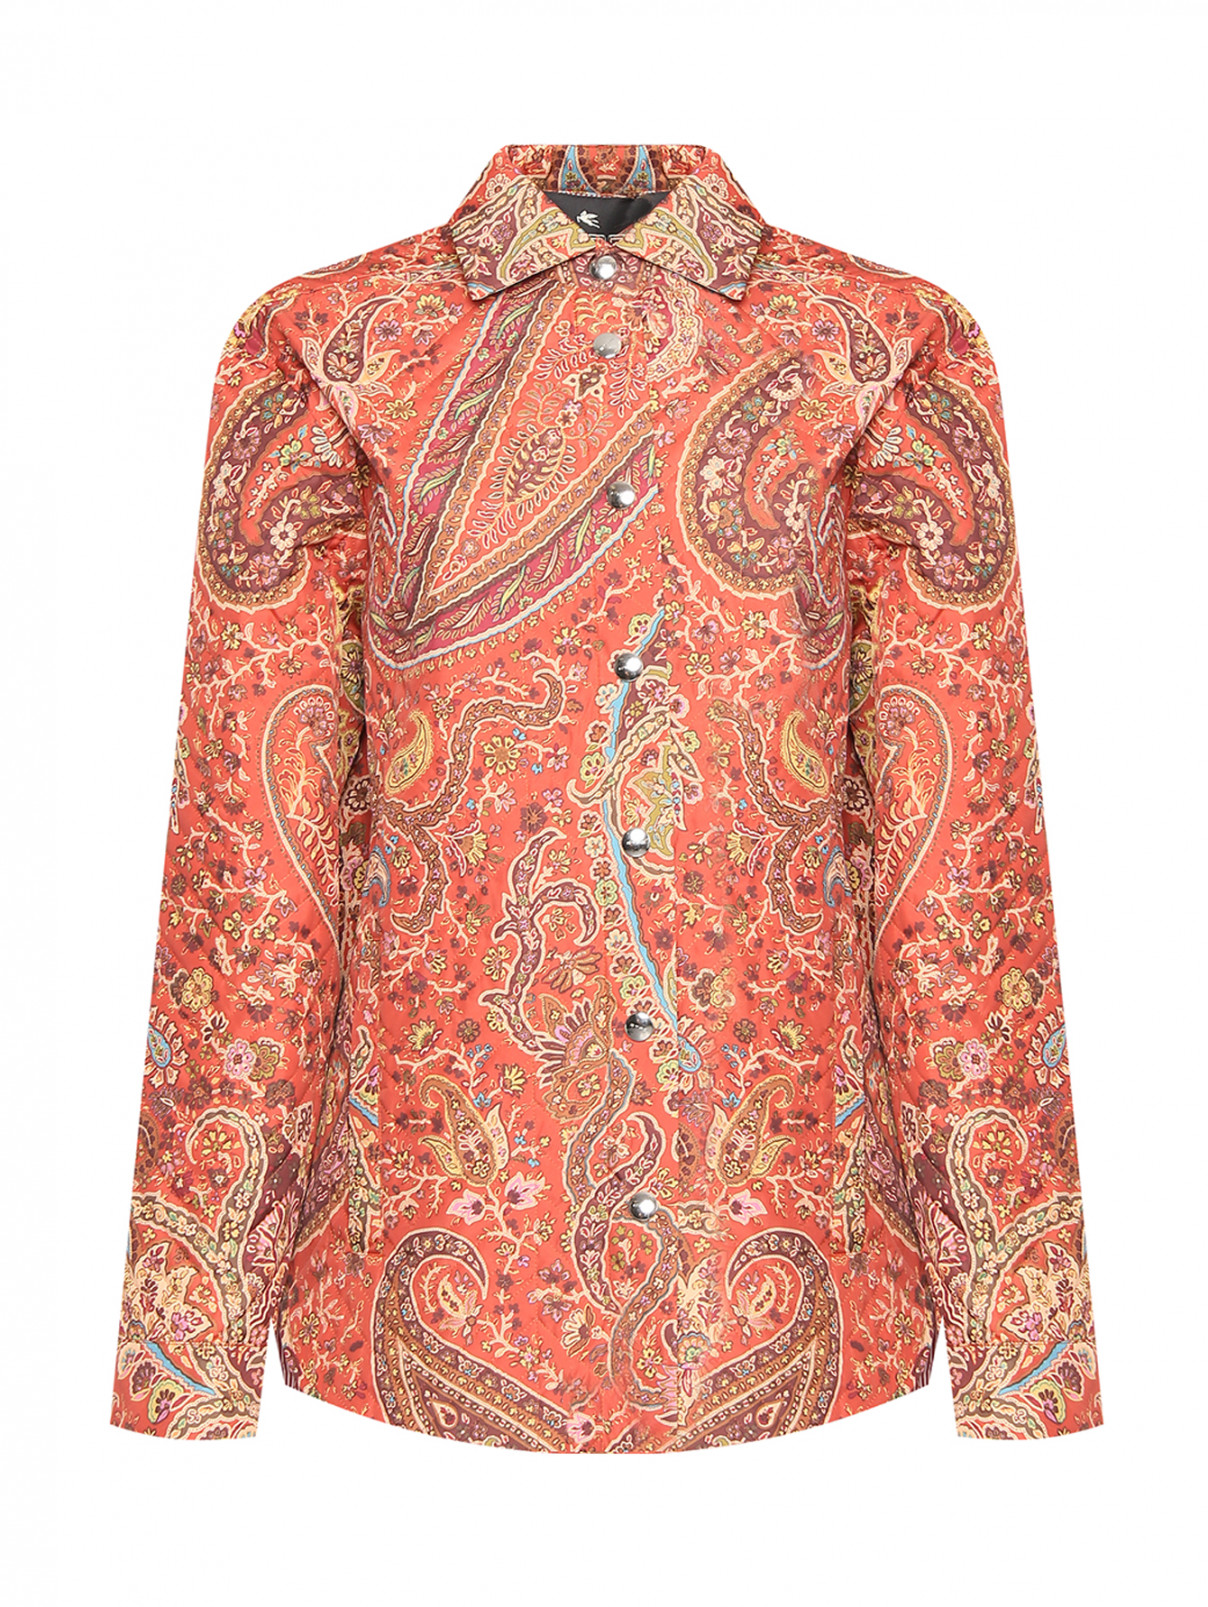 Стеганая куртка с узором Etro  –  Общий вид  – Цвет:  Оранжевый